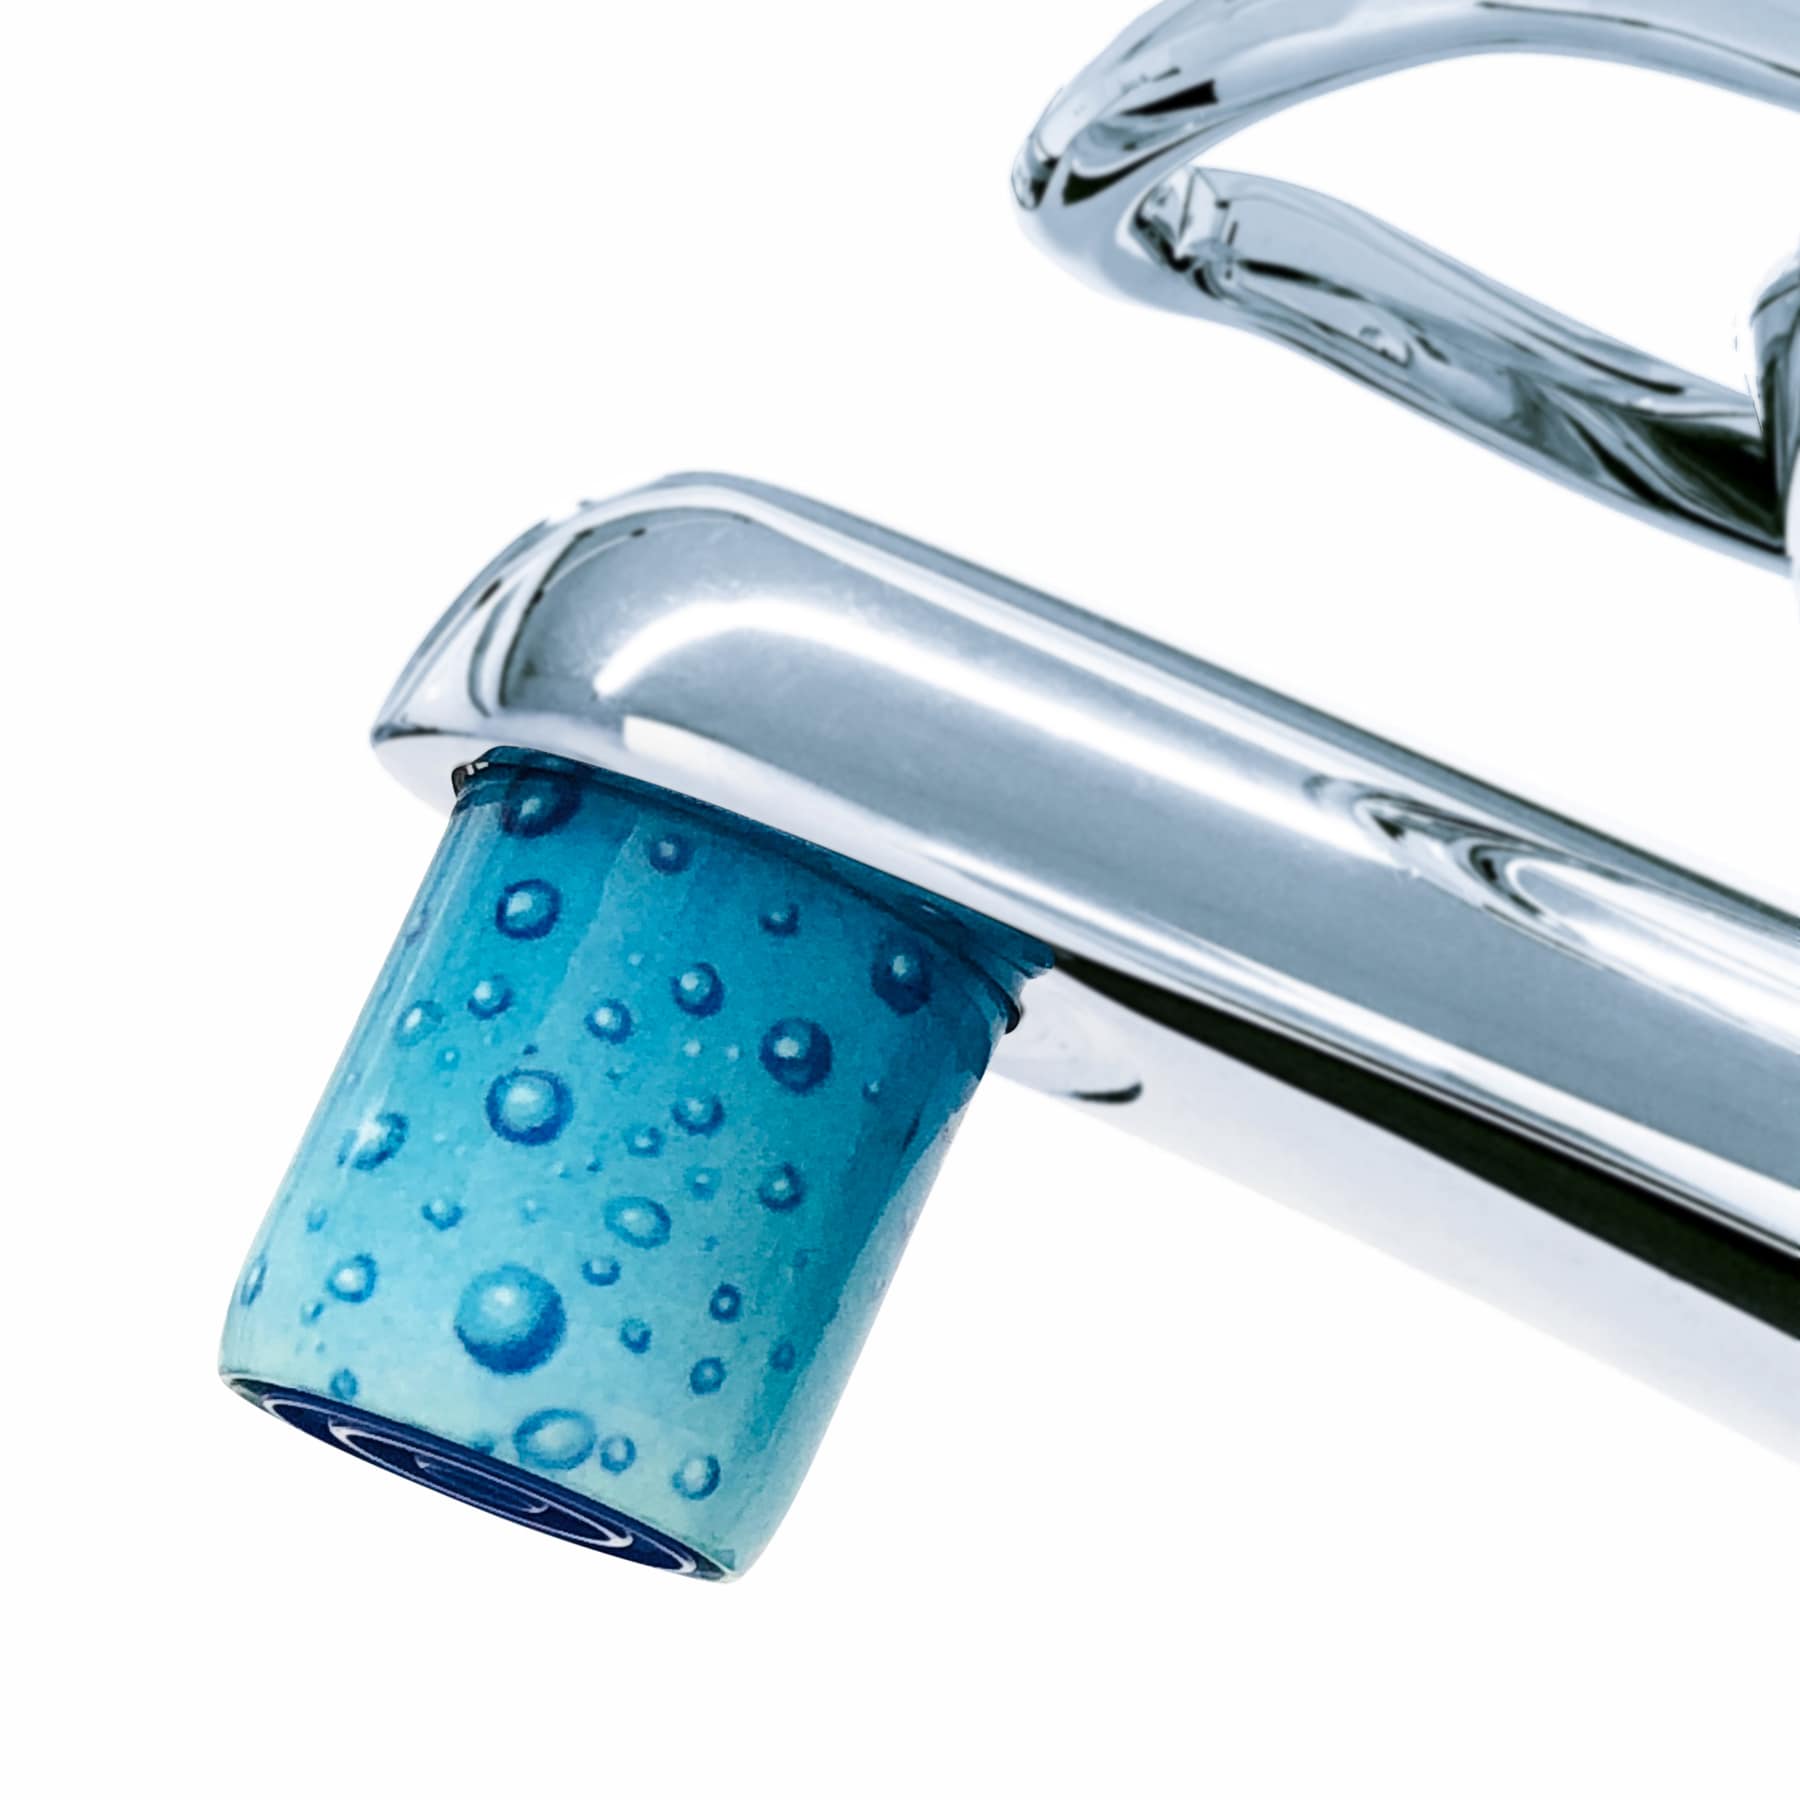 AquaClic-Strahlregler mit  Acqua Spumante-Design für eine umweltfreundliche Nutzung des Wasserhahns